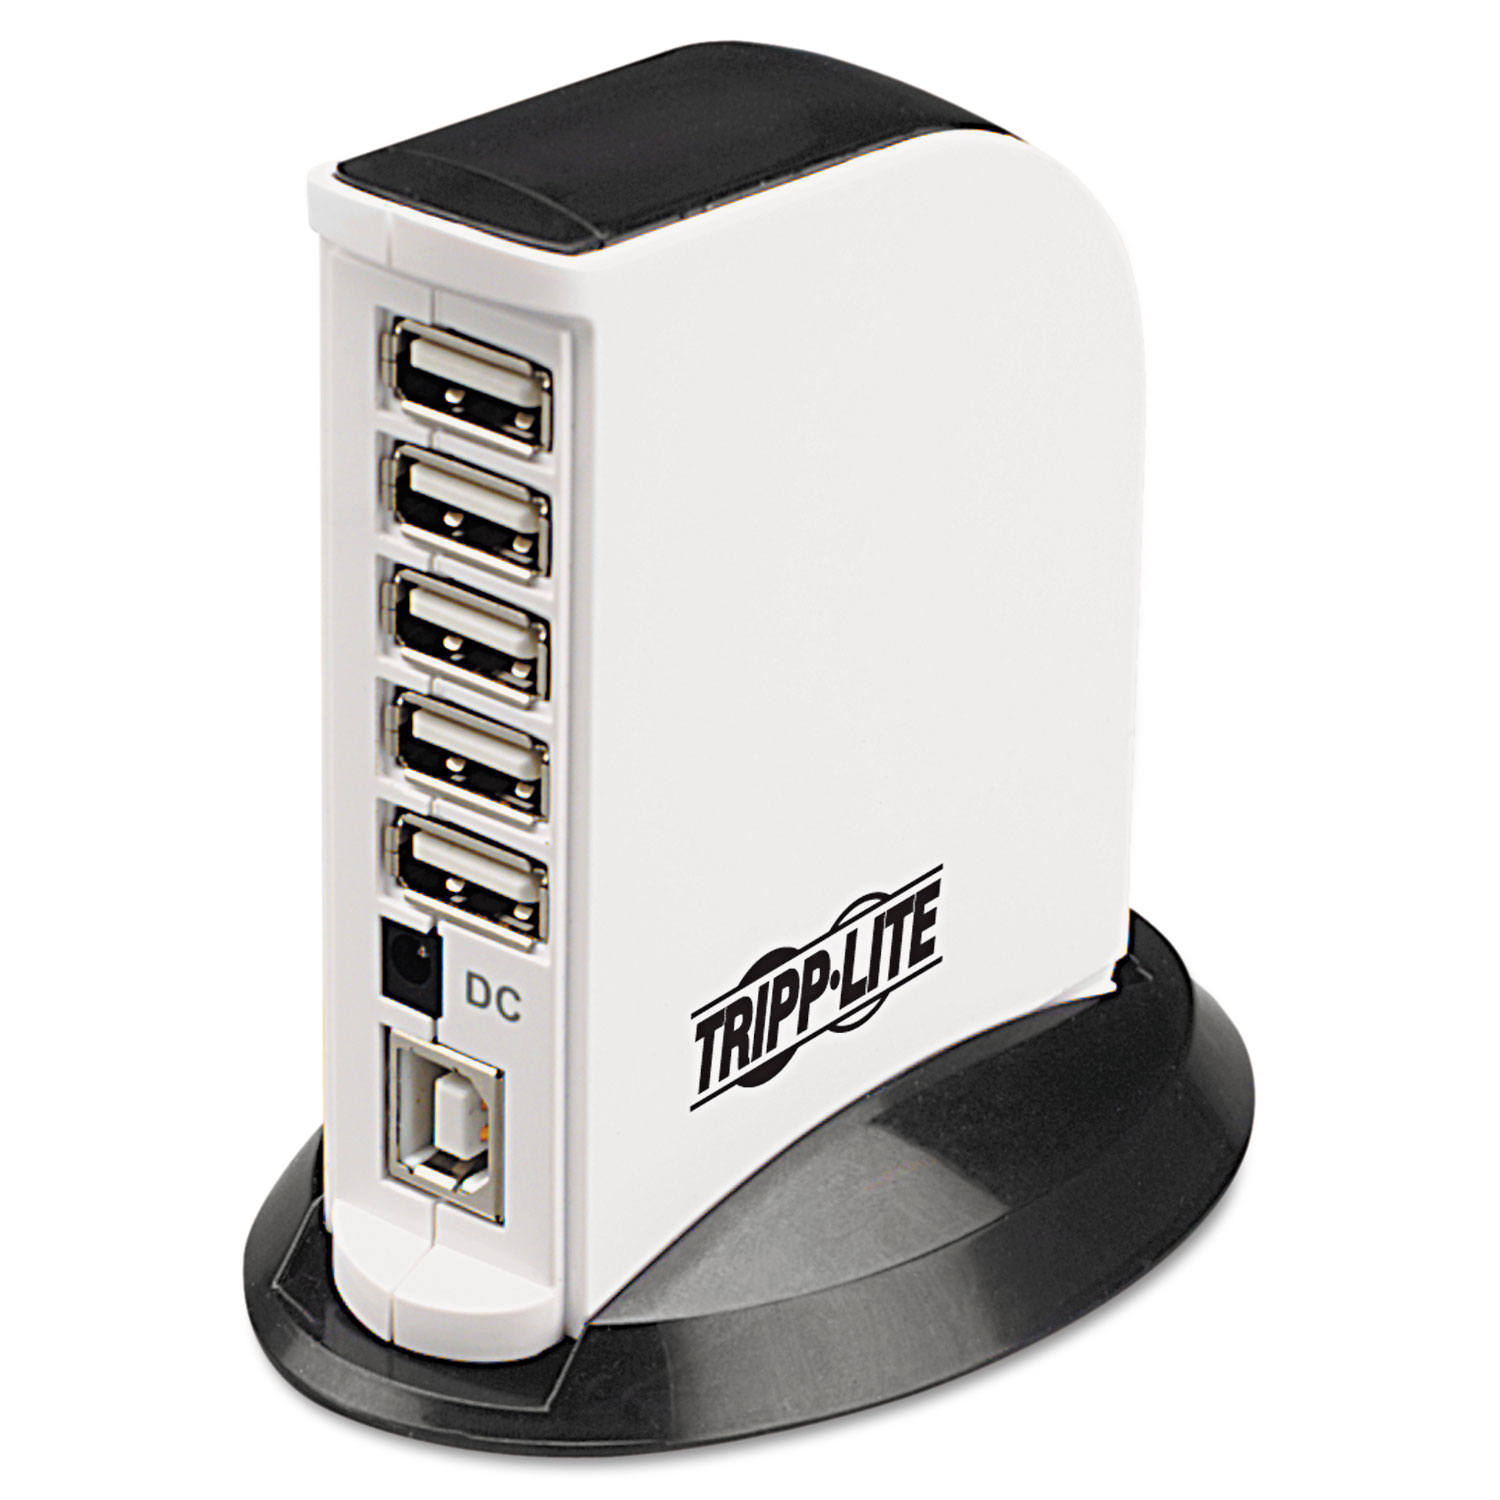  Tripp Lite U222-007-R USB 2.0 Hub, 7 Ports, Black/White (TRPU222007R) 